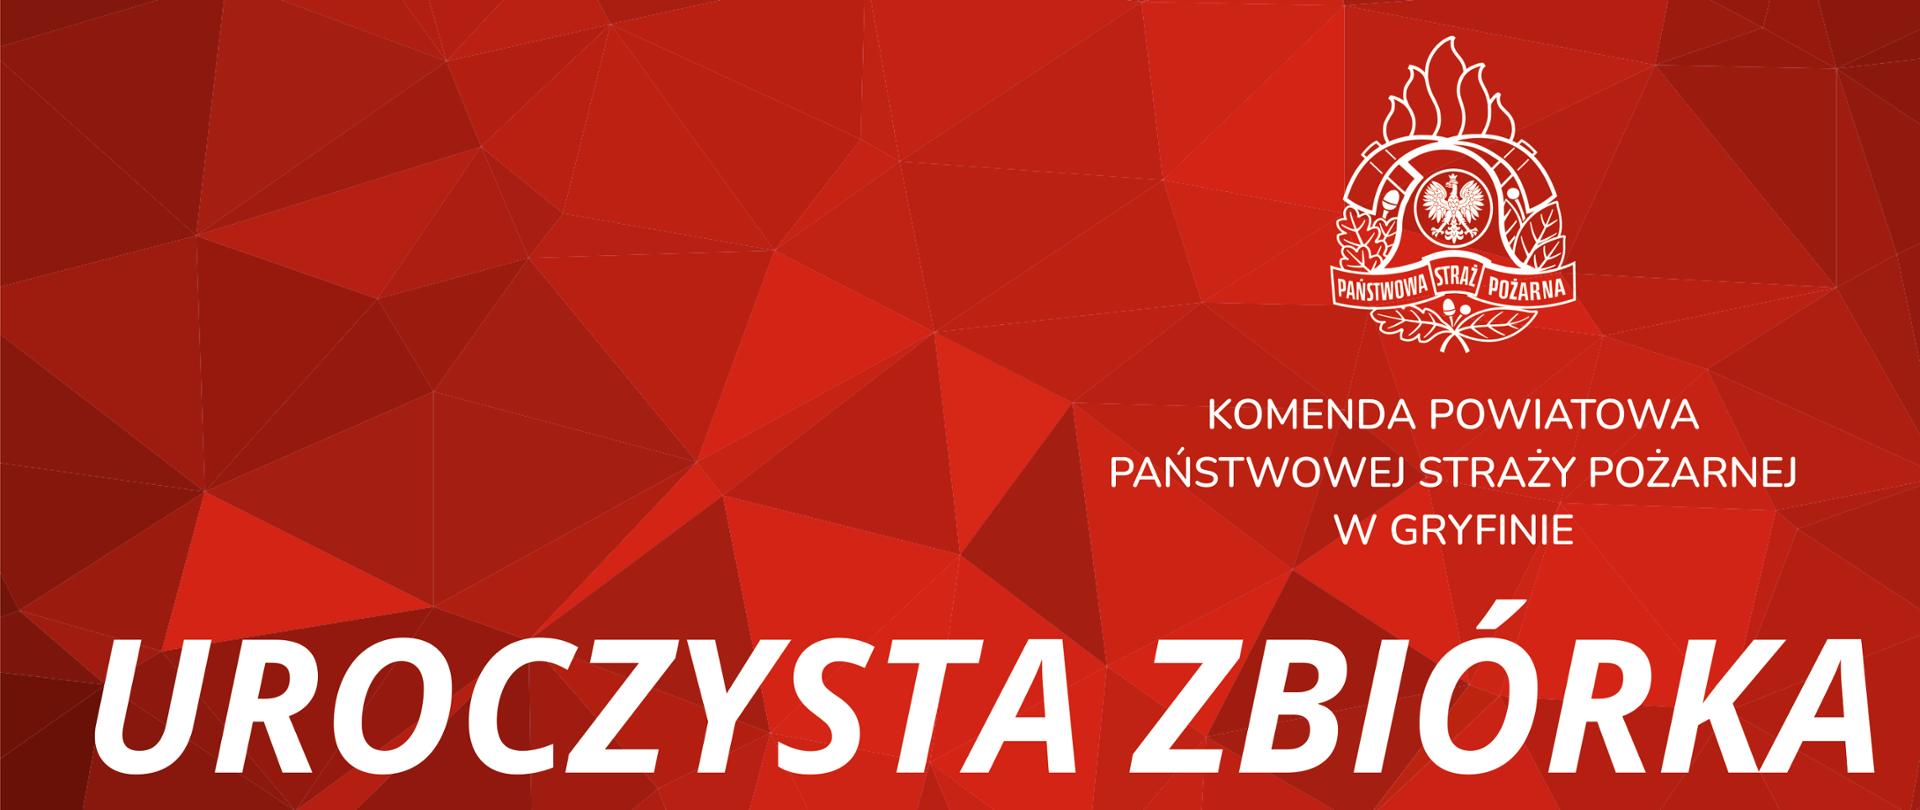 Baner informujący o przeprowadzeniu uroczystej zbiórki w Komendzie Powiatowej PSP w Gryfinie